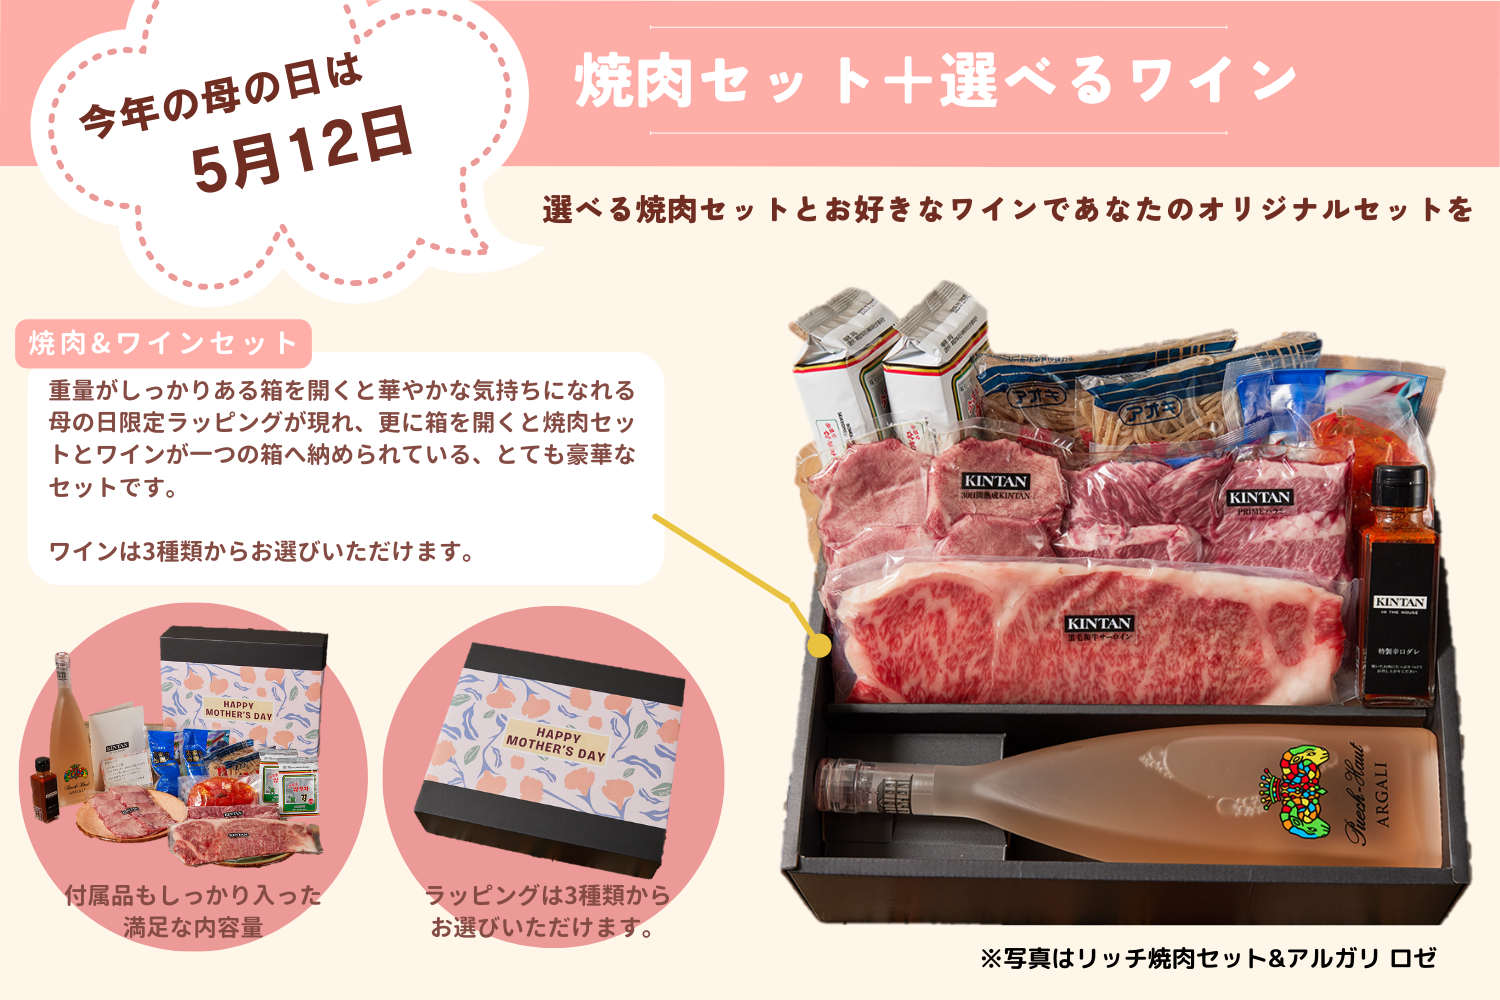 【ワイン付き】A5ランク仙台牛焼肉セット(合計670g)